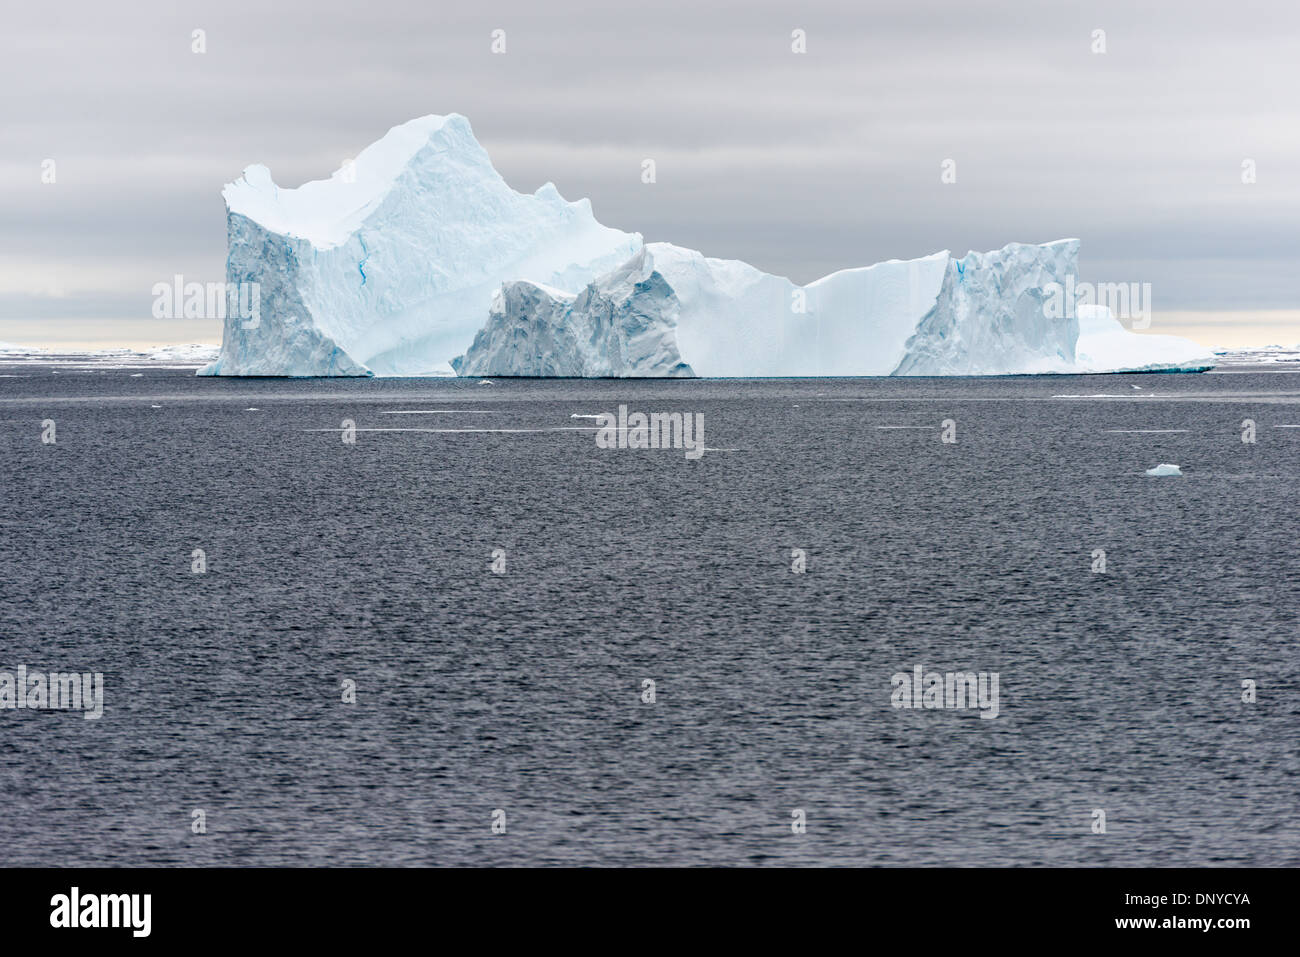 Antartide - un iceberg con ripidi fianchi jacked galleggia sulle acque grigie in Argentina le isole sul lato occidentale della penisola antartica. Foto Stock